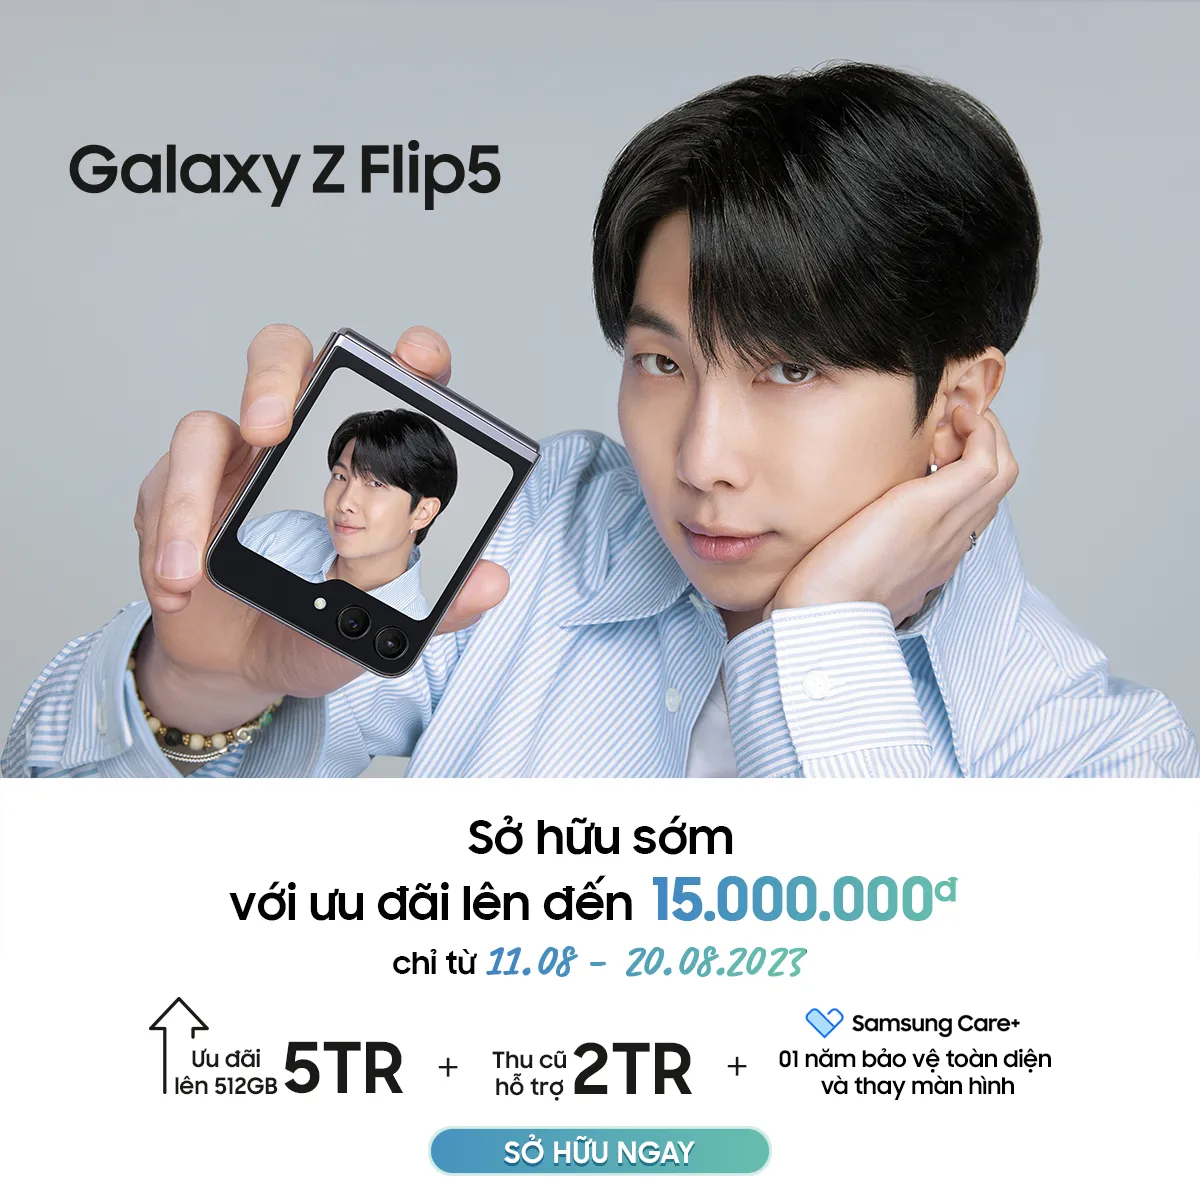 Cơ hội cuối cùng để sở hữu Galaxy Z Flip5 với siêu ưu đãi lên đến 15 triệu đồng